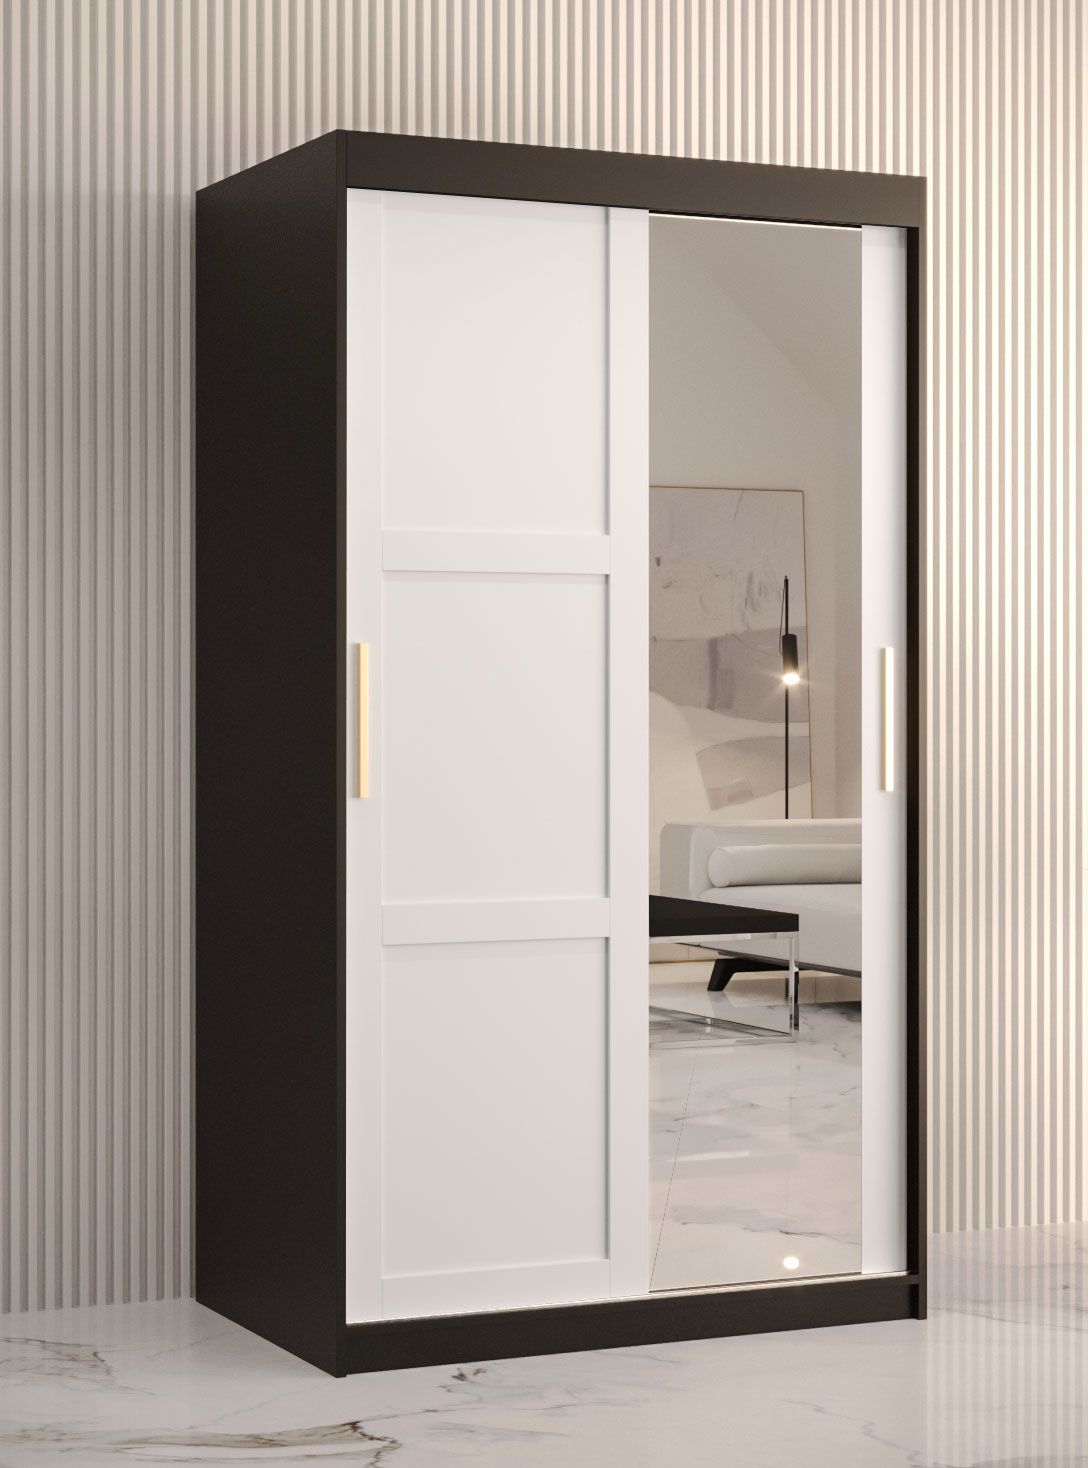 kledingkast met één deur met spiegel Liskamm 27, kleur: mat zwart / mat wit - afmetingen: 200 x 100 x 62 cm (H x B x D), met twee deuren